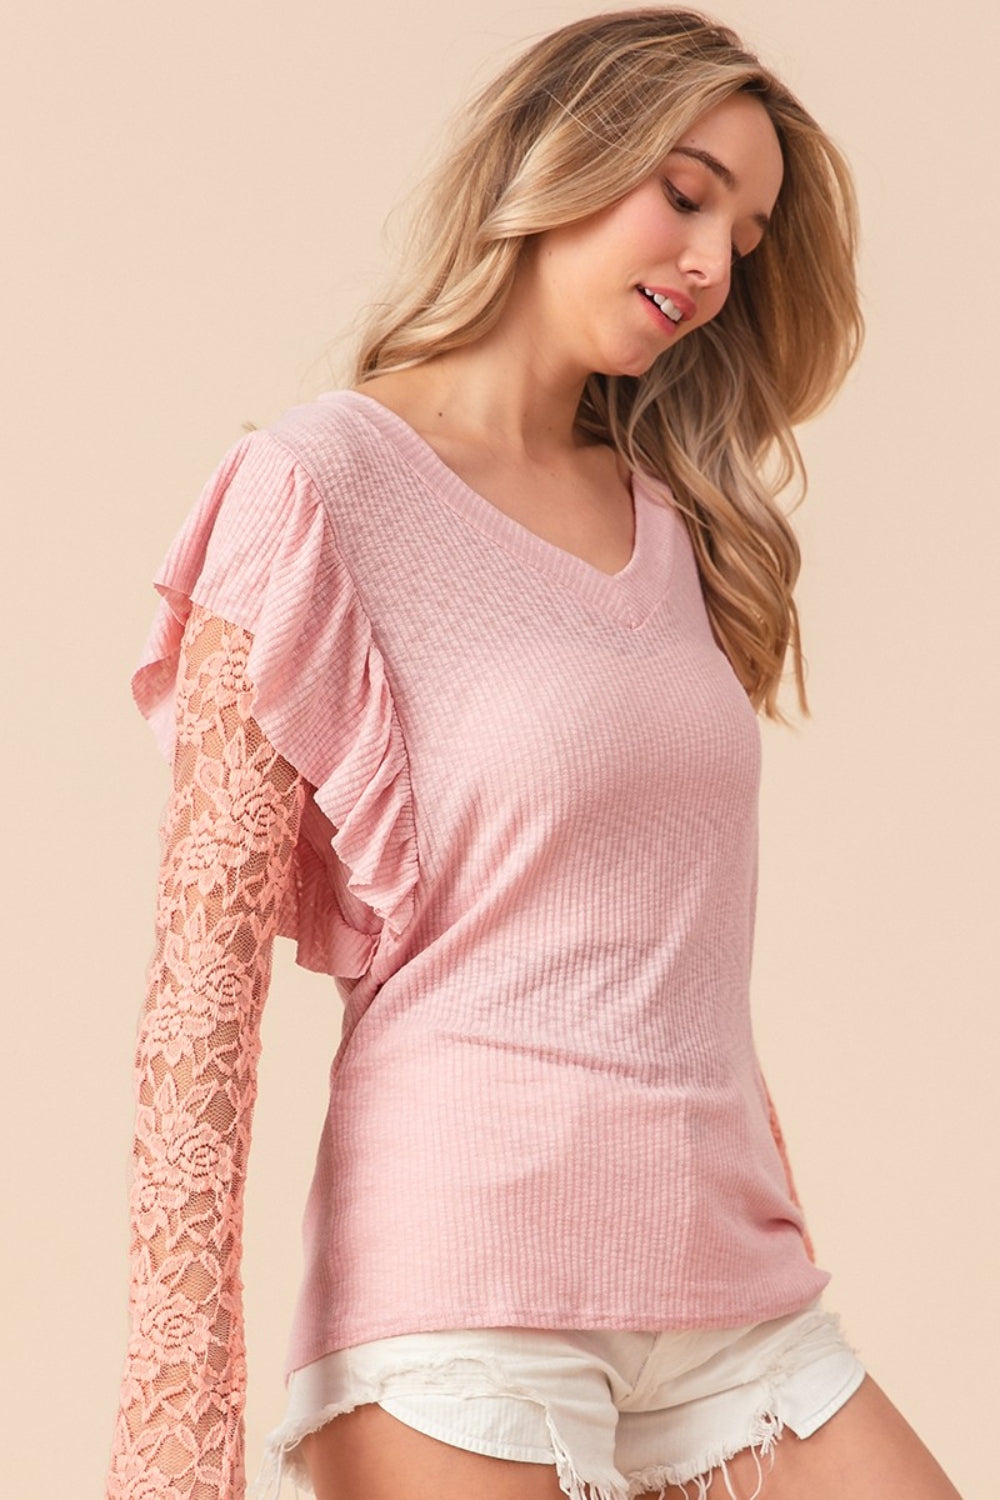 TEEK - Blush Pink Ruffled Lace Sleeve Rib Knit Top TOPS TEEK Trend   